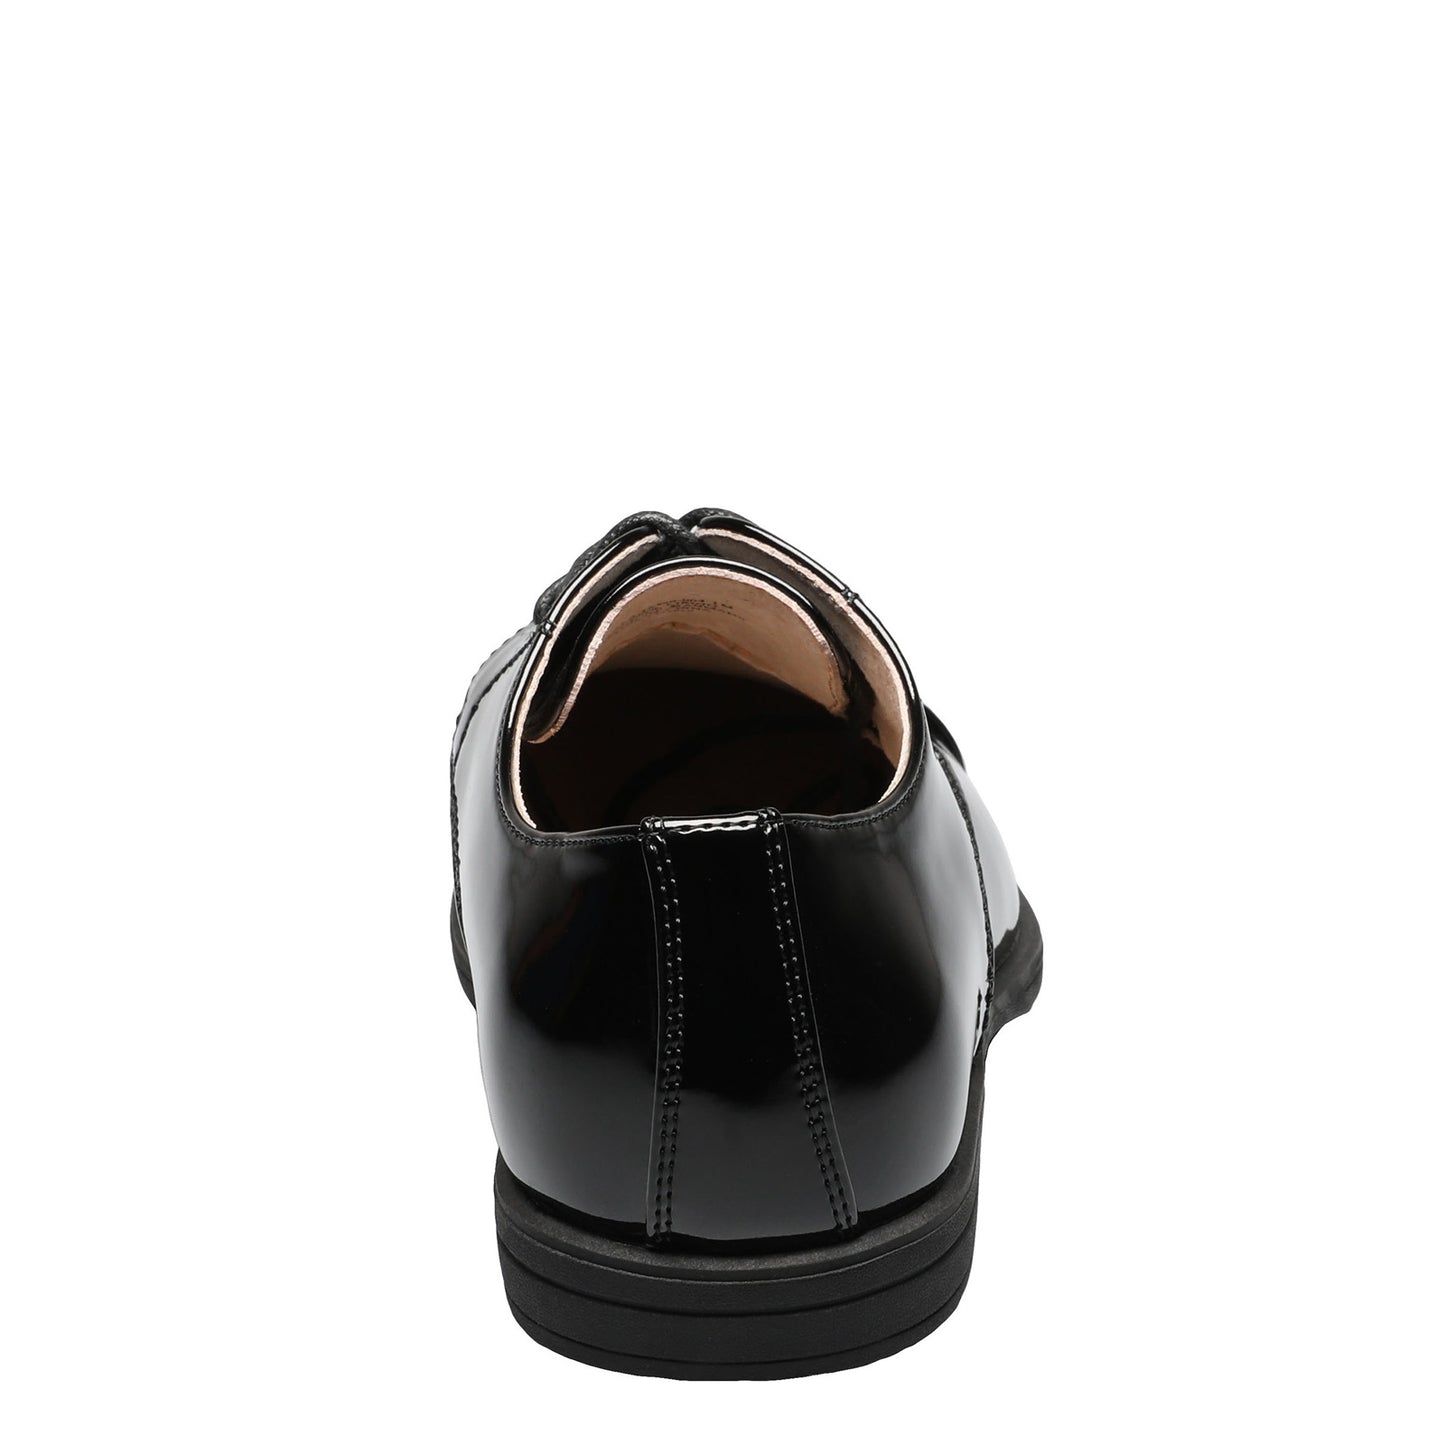 Peltz Shoes  Boy's Florsheim Reveal Cap Toe Oxford JR – Little Kid & Big Kid Black Patent 16599-004